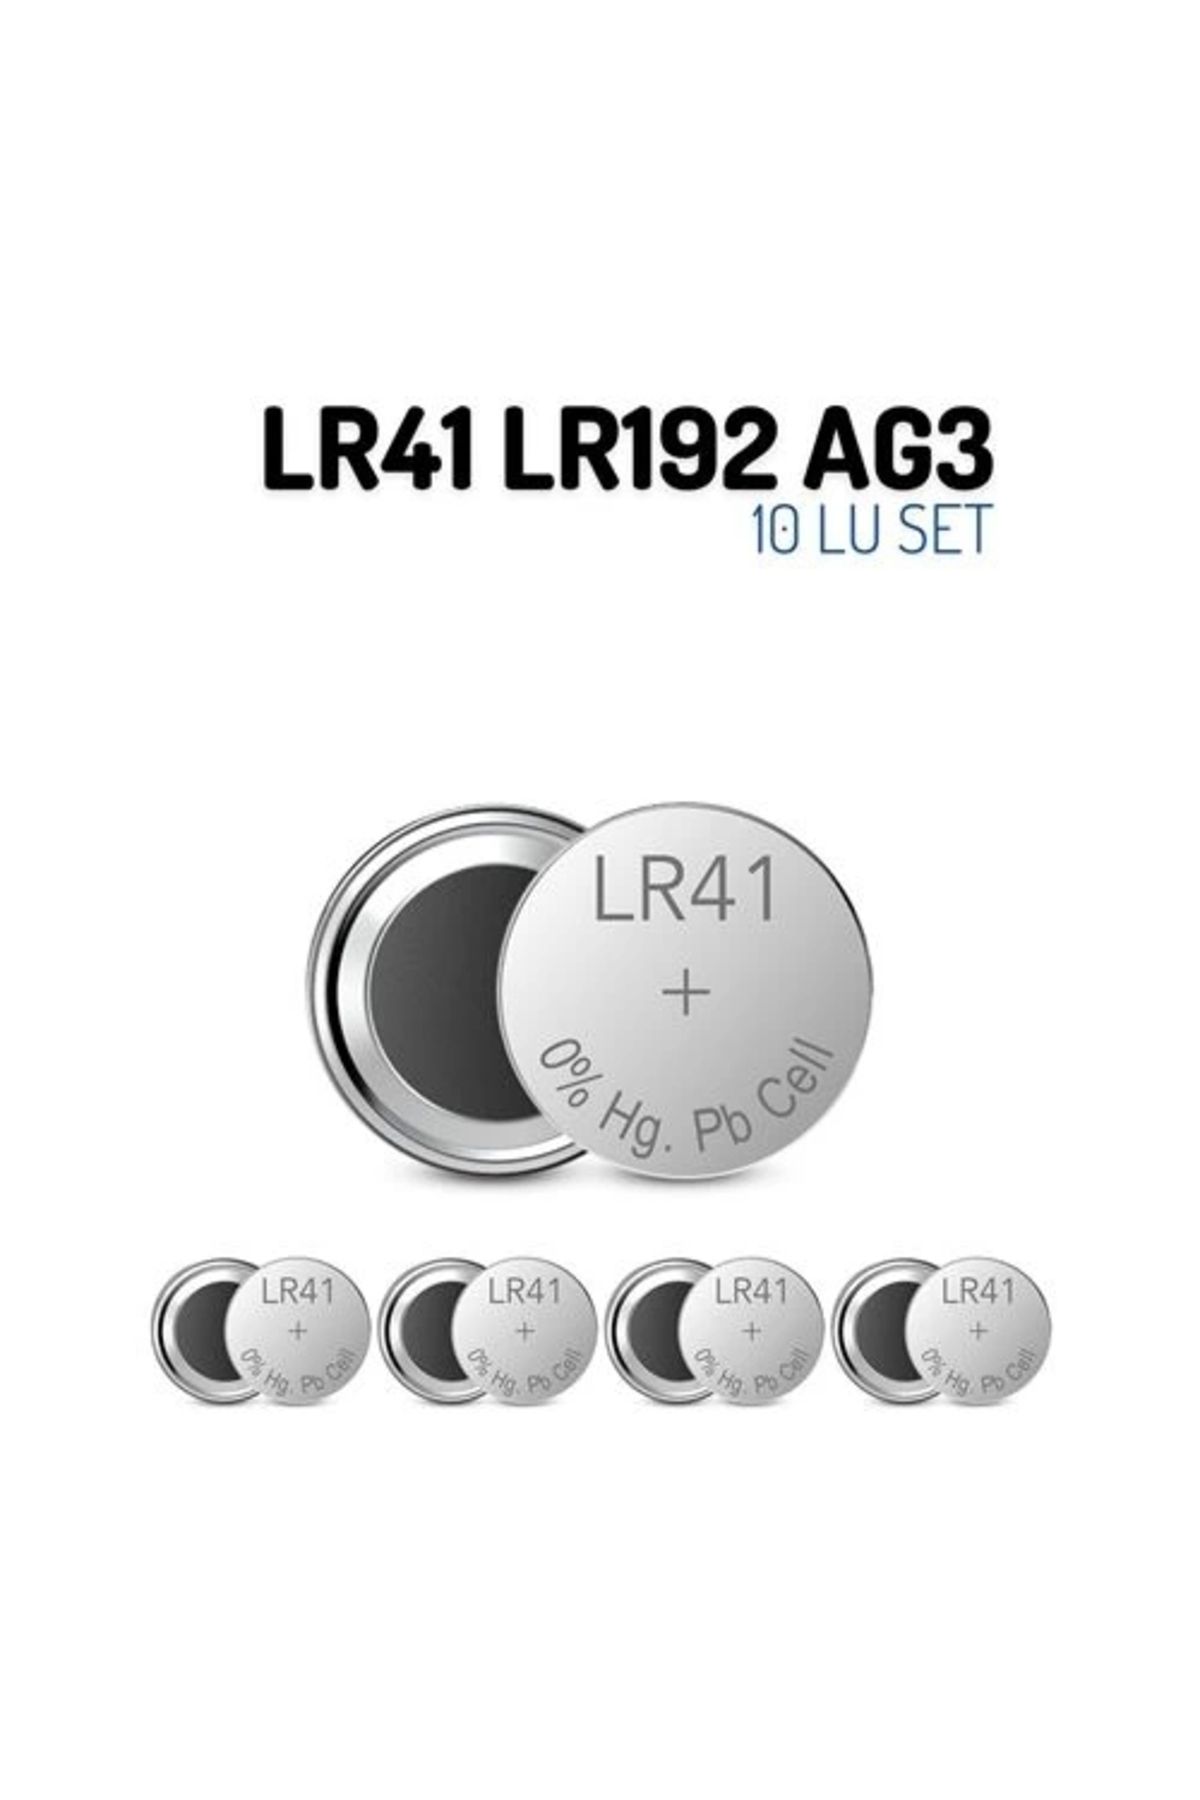 ADEKD LR41 LR192 AG3 1.55V 10 Adet Alkaline Pil 716932